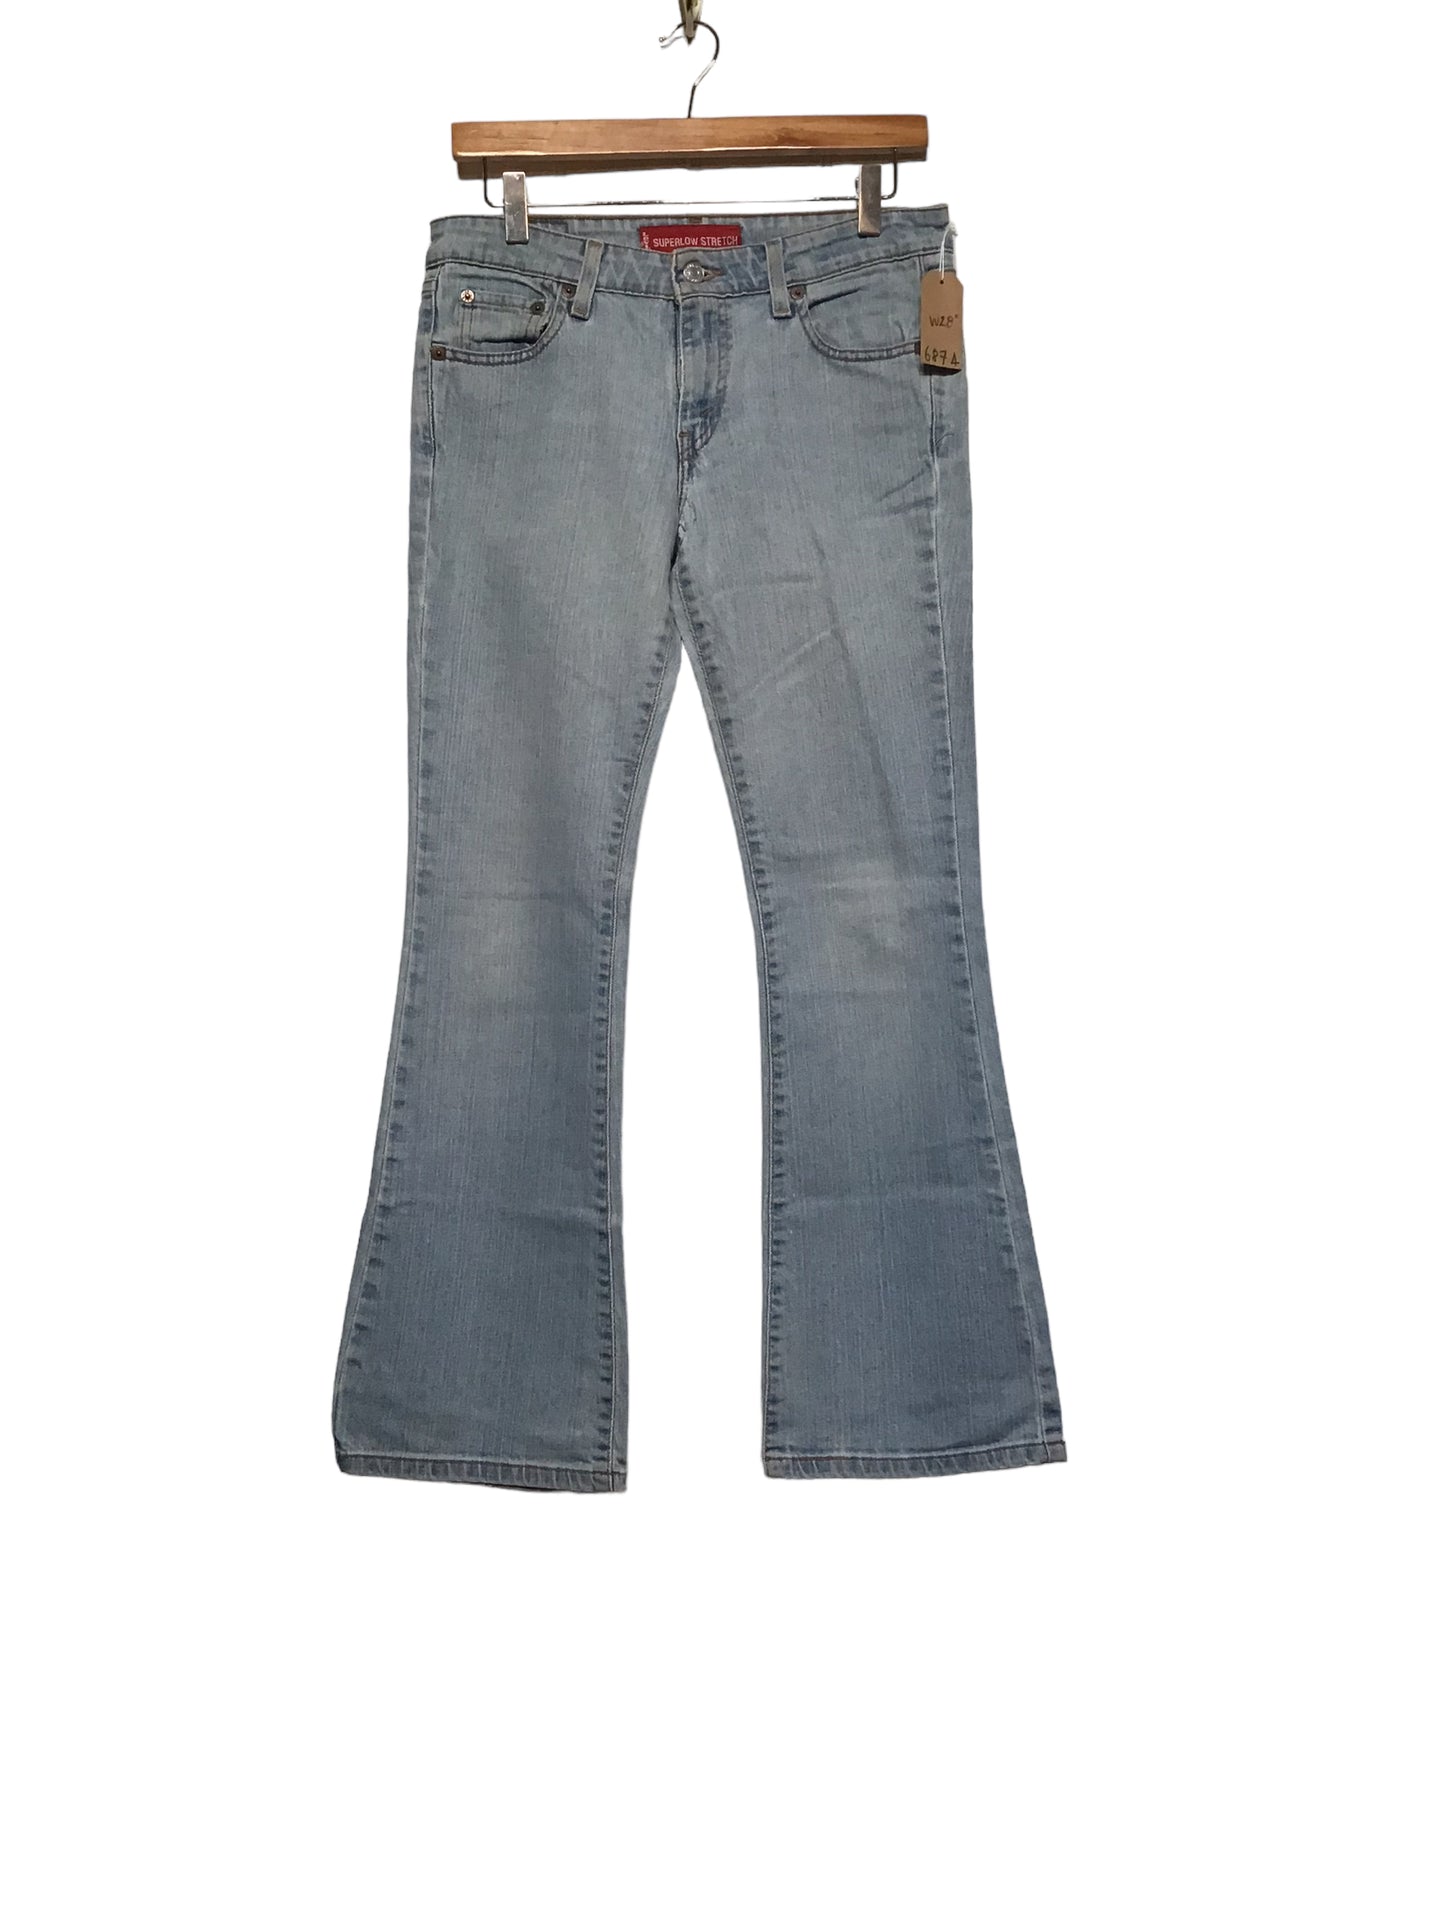 Levi 518 Jeans (32x30)